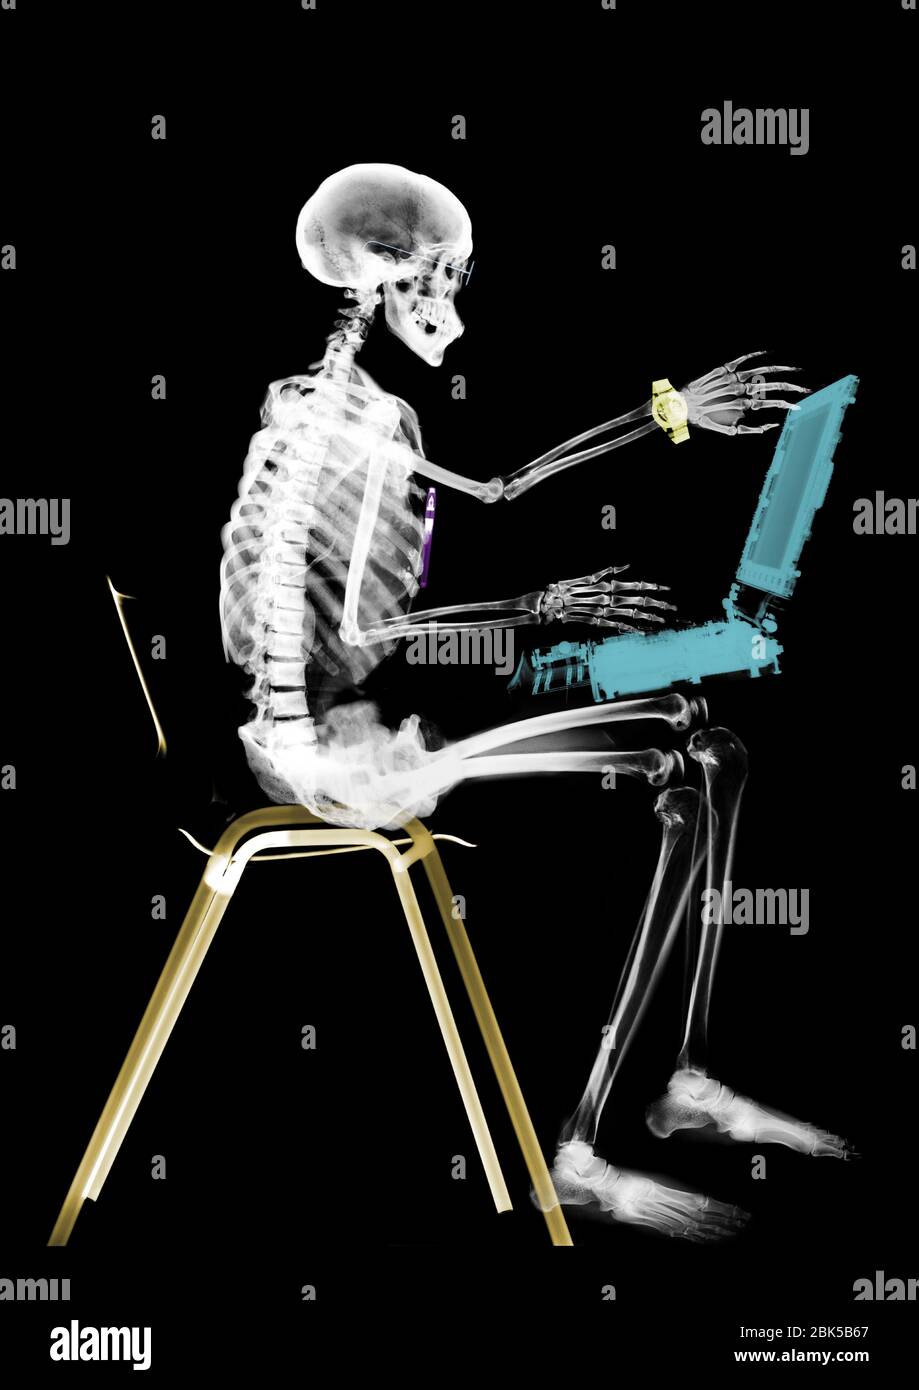 Esqueleto humano sentado con ordenador portátil, rayos X de color. Foto de stock